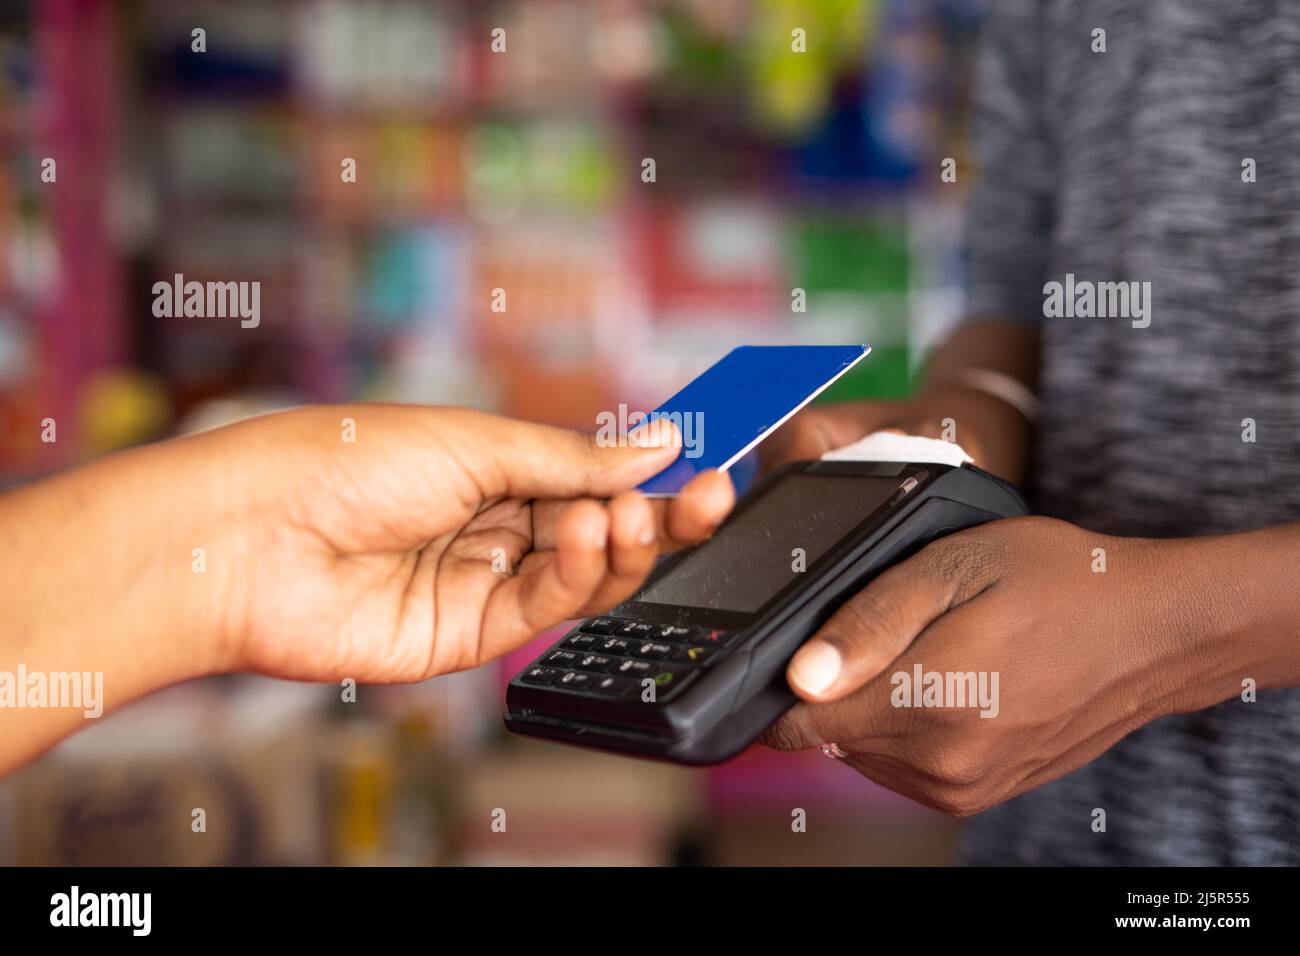 Gros plan du client payant de l'argent en touchant la carte de crédit pour faire glisser la machine à l'épicerie - concept de paiement numérique, contactez moins Banque D'Images